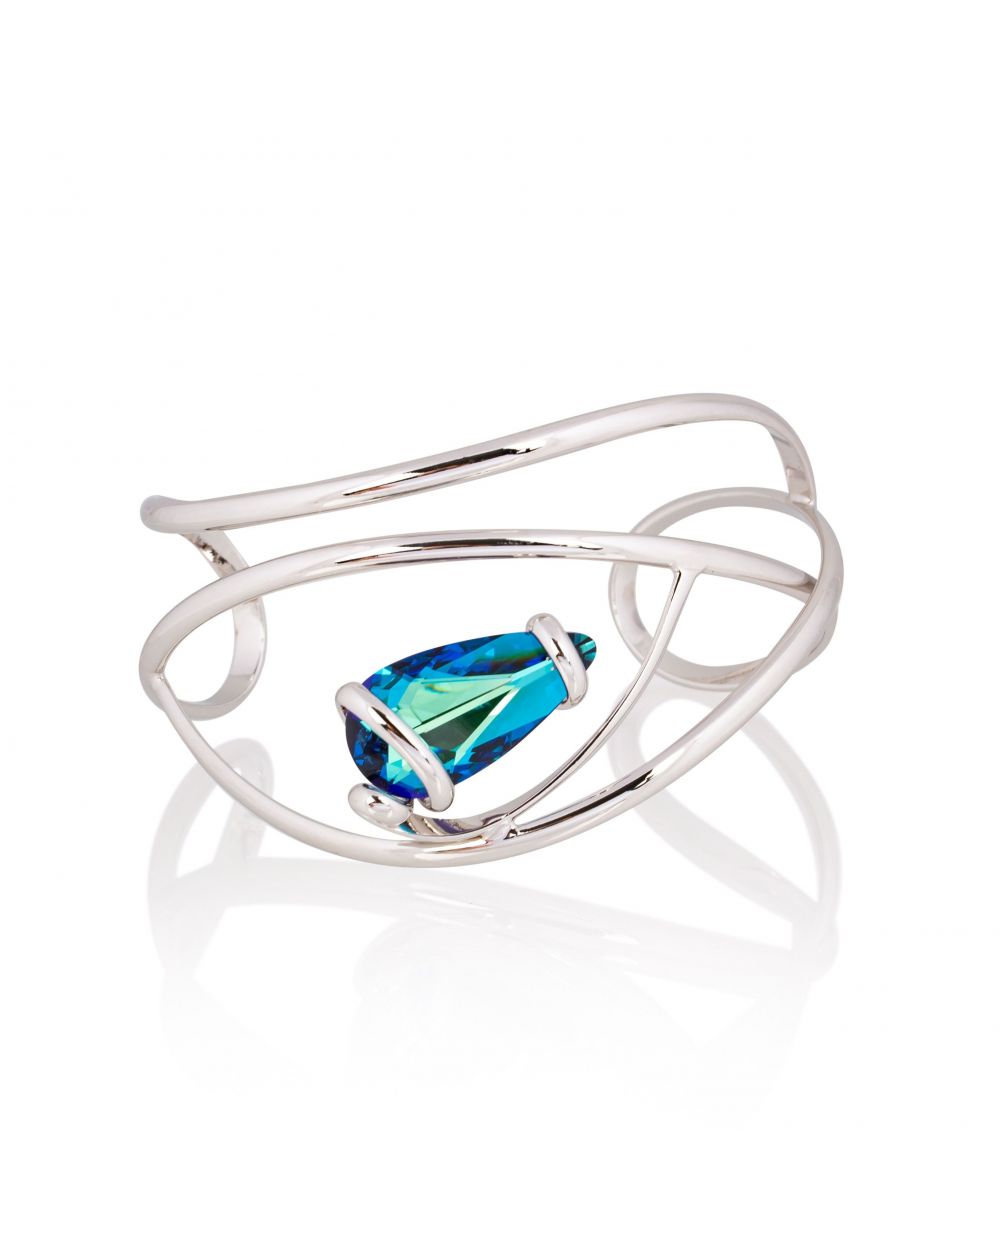 Andrea Marazzini bijoux - Bracelet cristal Swarovski Elegant Bermuda blue